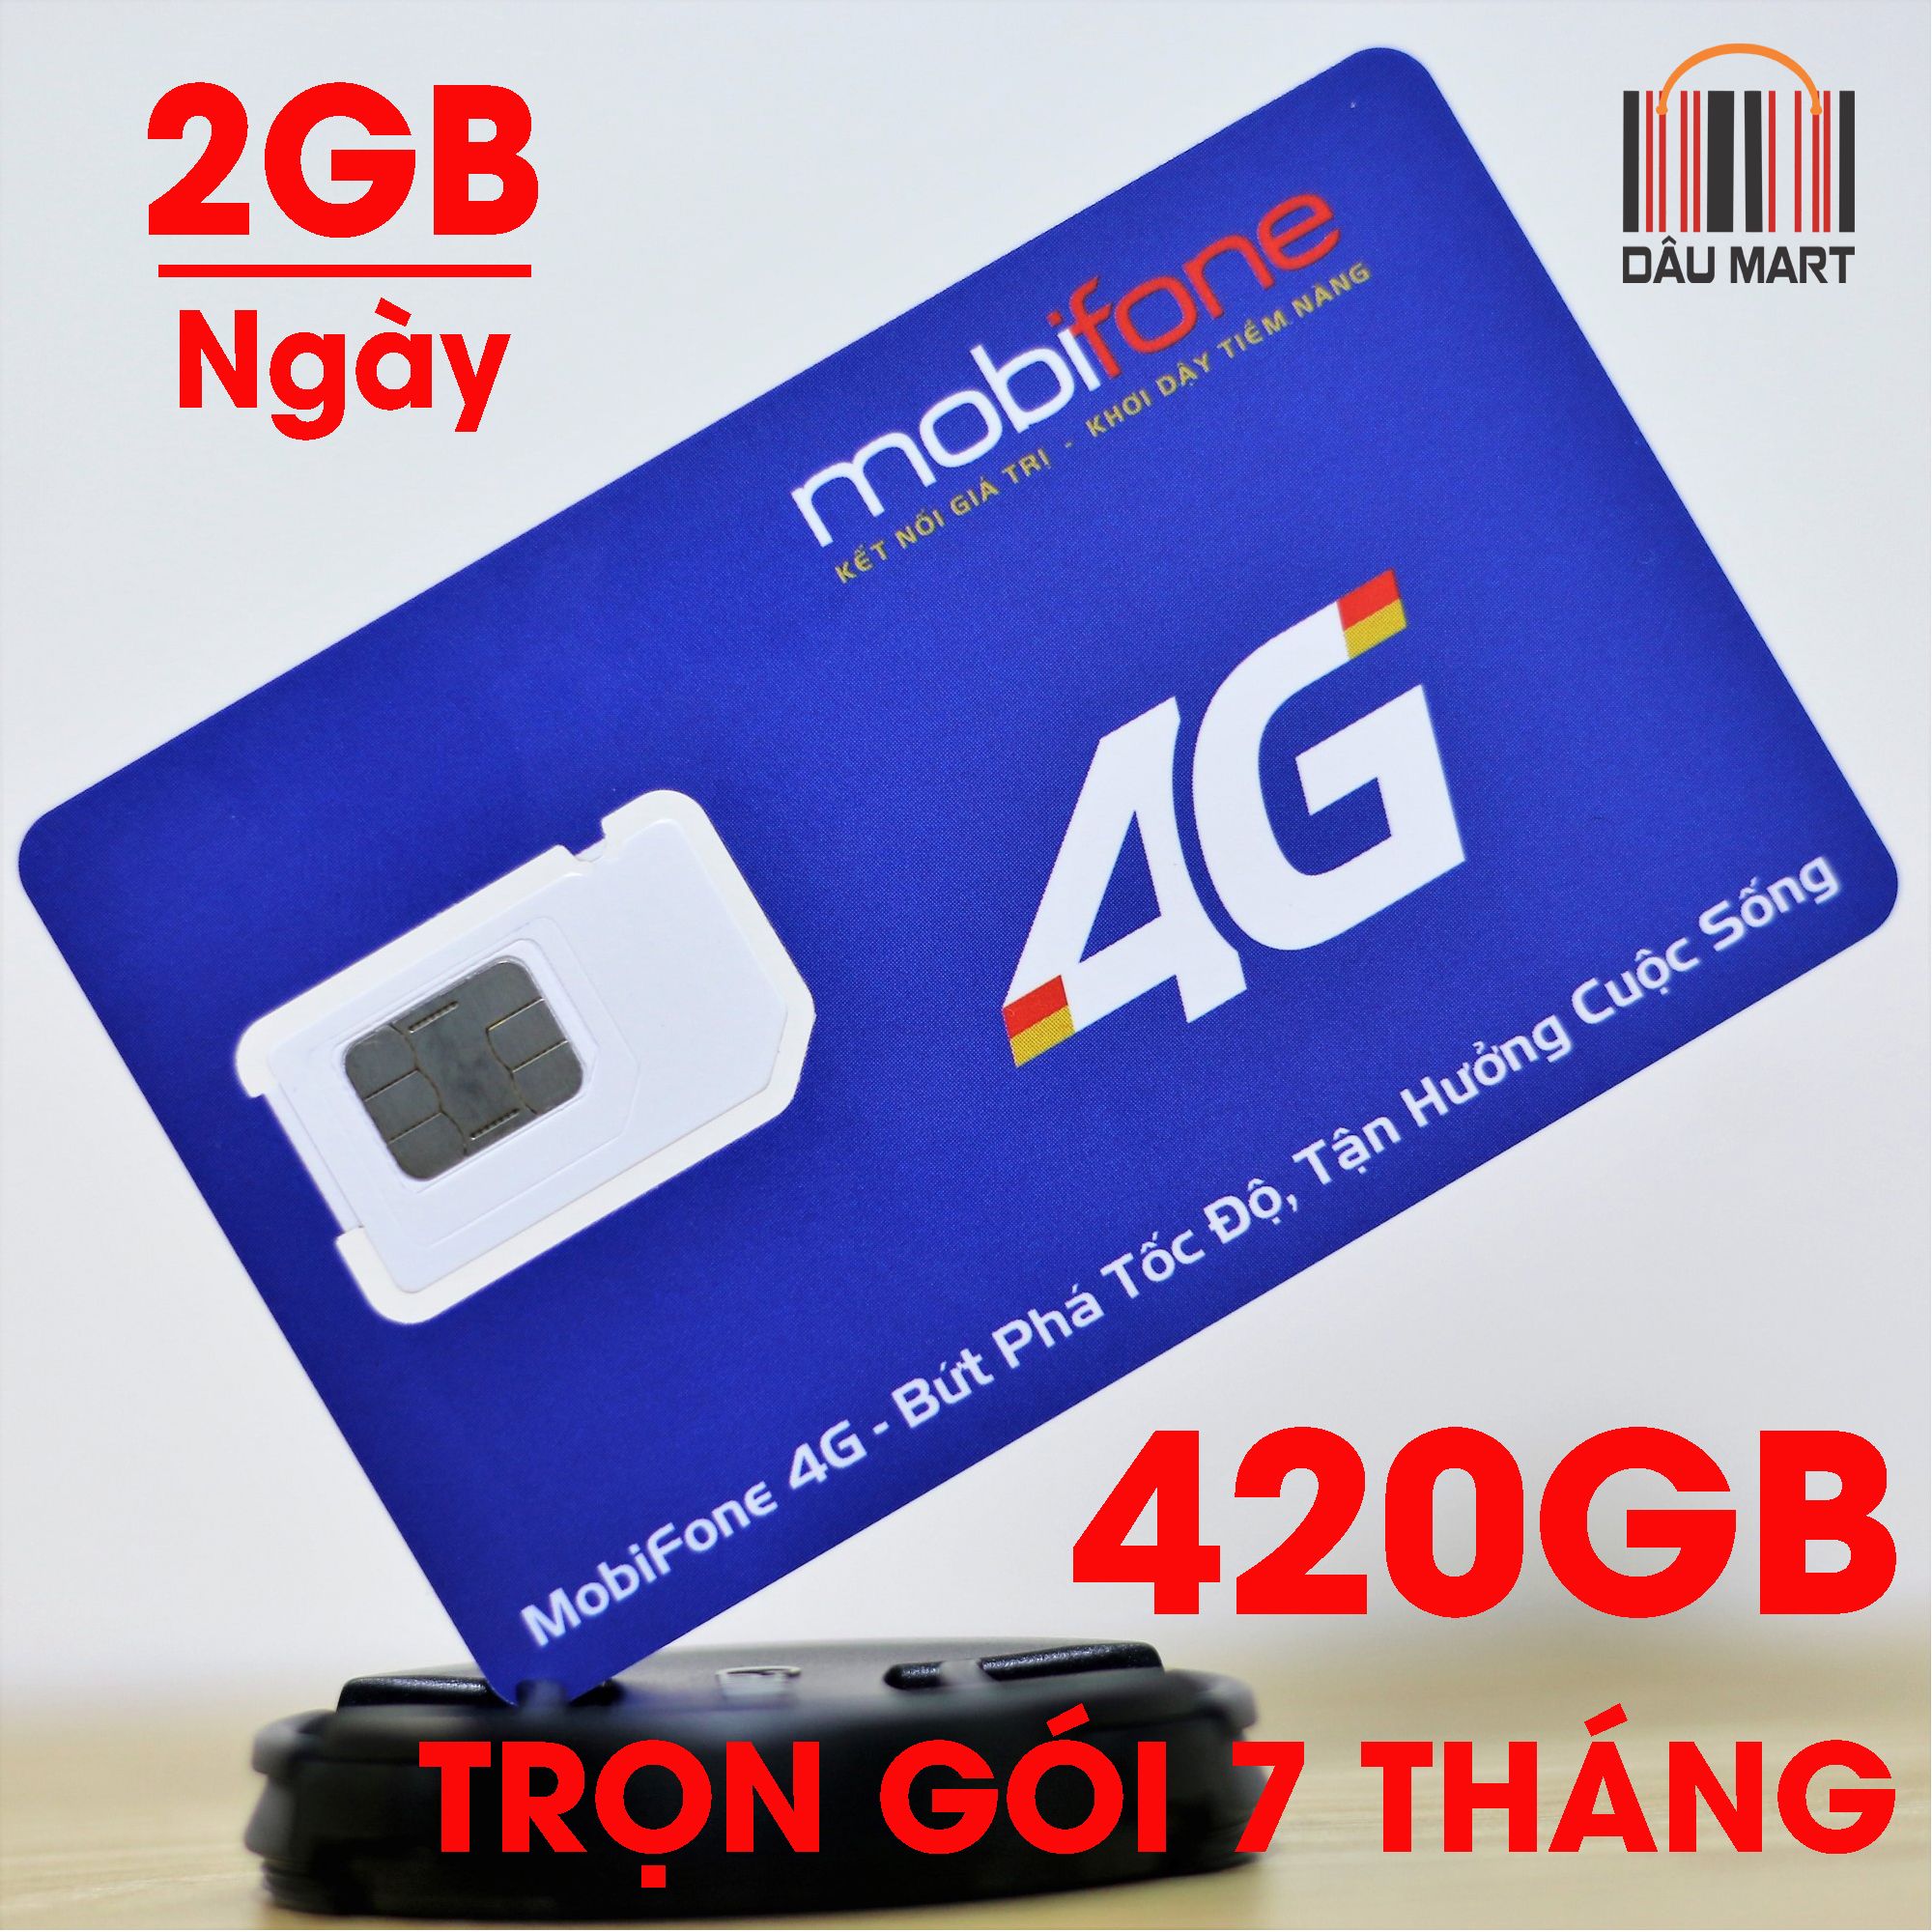 SIM 3G 4G Mobifone Trọn Gói 7 Tháng 420GB (2GB/Ngày)